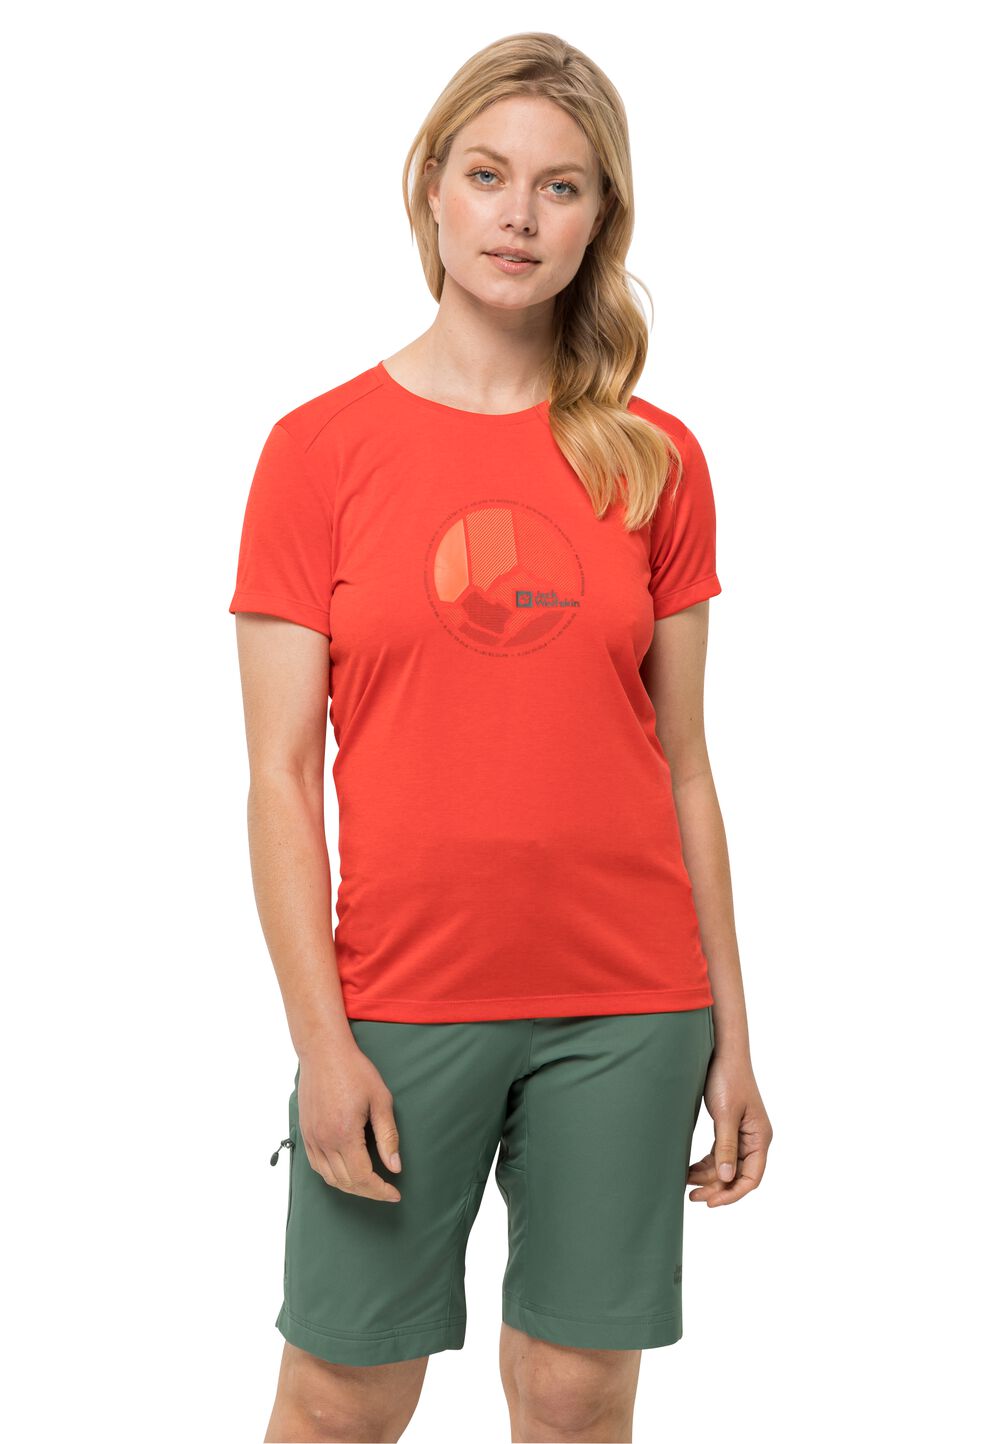 Jack Wolfskin Funktionsshirt Damen Crosstrail Graphic T-Shirt Women XXL tango orange tango orange von Jack Wolfskin